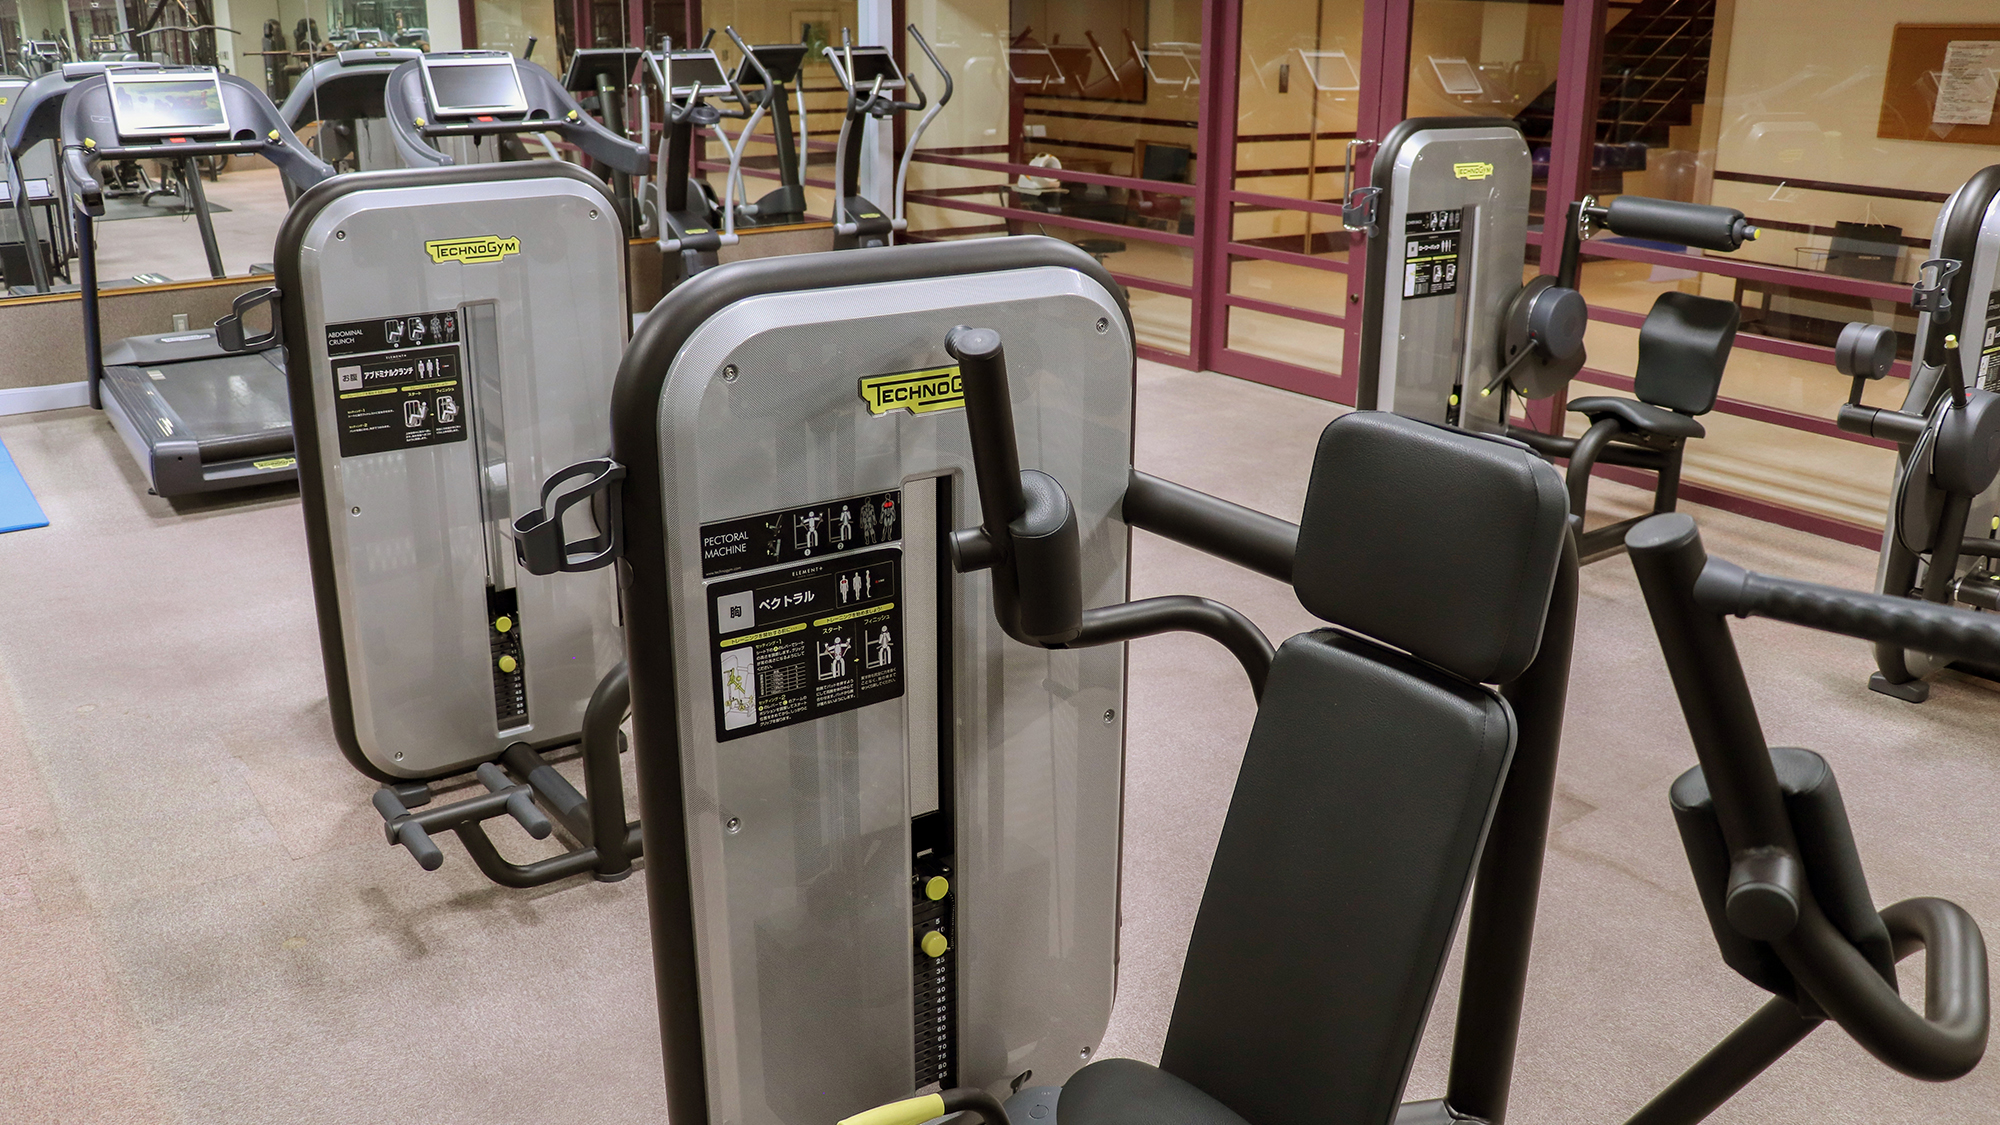 脂肪燃焼に効果的な有酸素トレーニングマシンや特定の部位を鍛えられる筋力トレーニングマシン